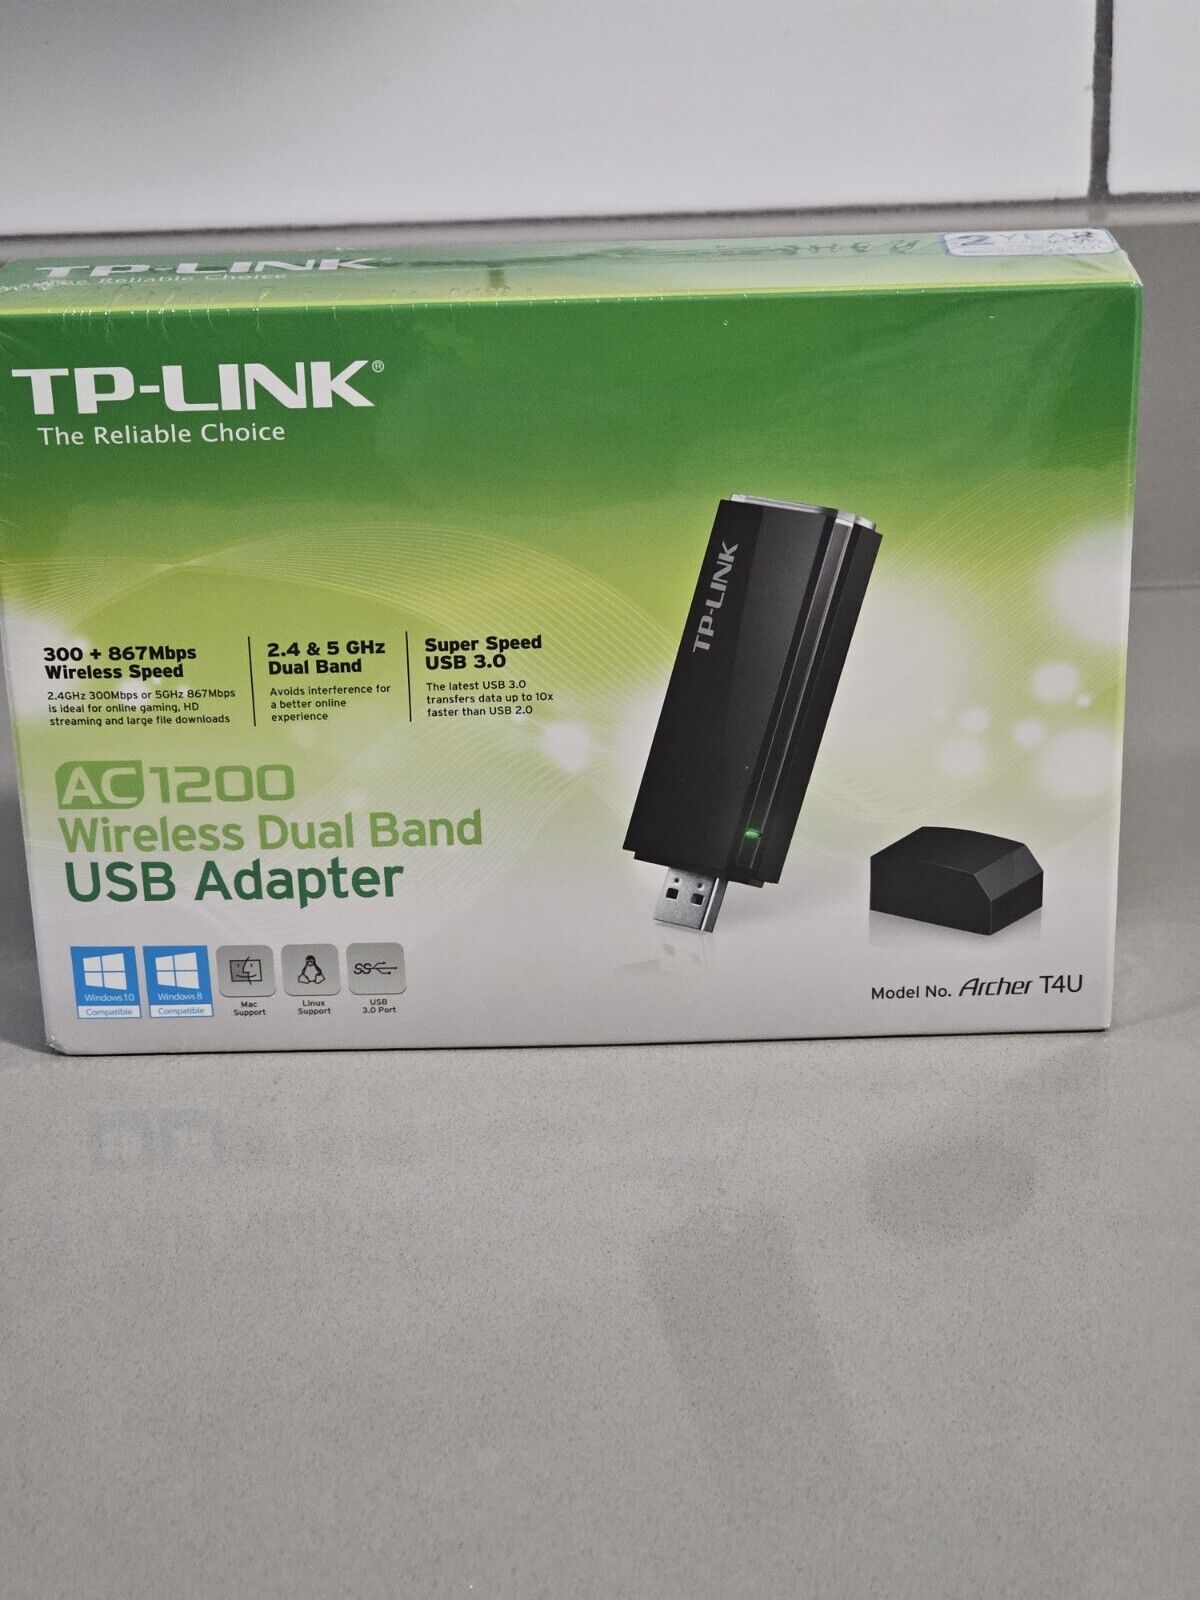 TP-Link Archer T4U AC 1200 Wireless Dual Band USB Adapter USB 3.0 Windows 8 10